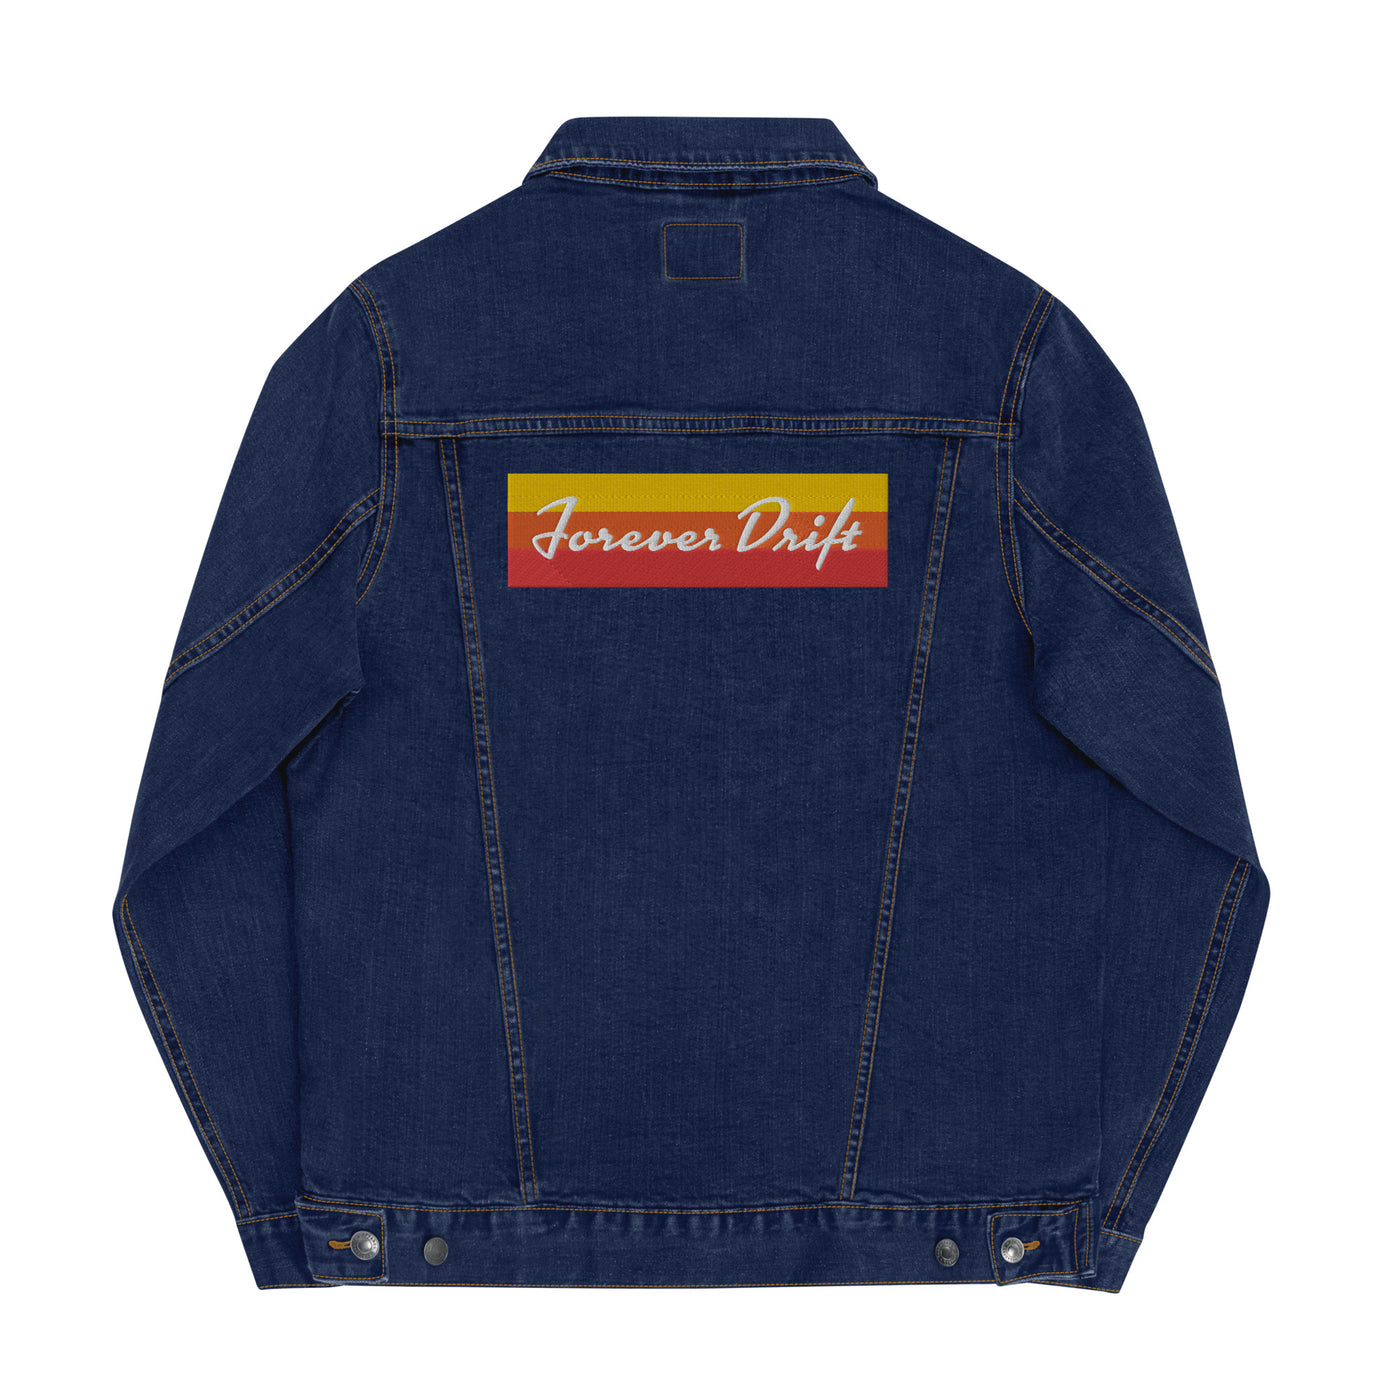 Forever Drift Classic Unisex Denim Jacket - Sunset Neon - Black/Blue/White